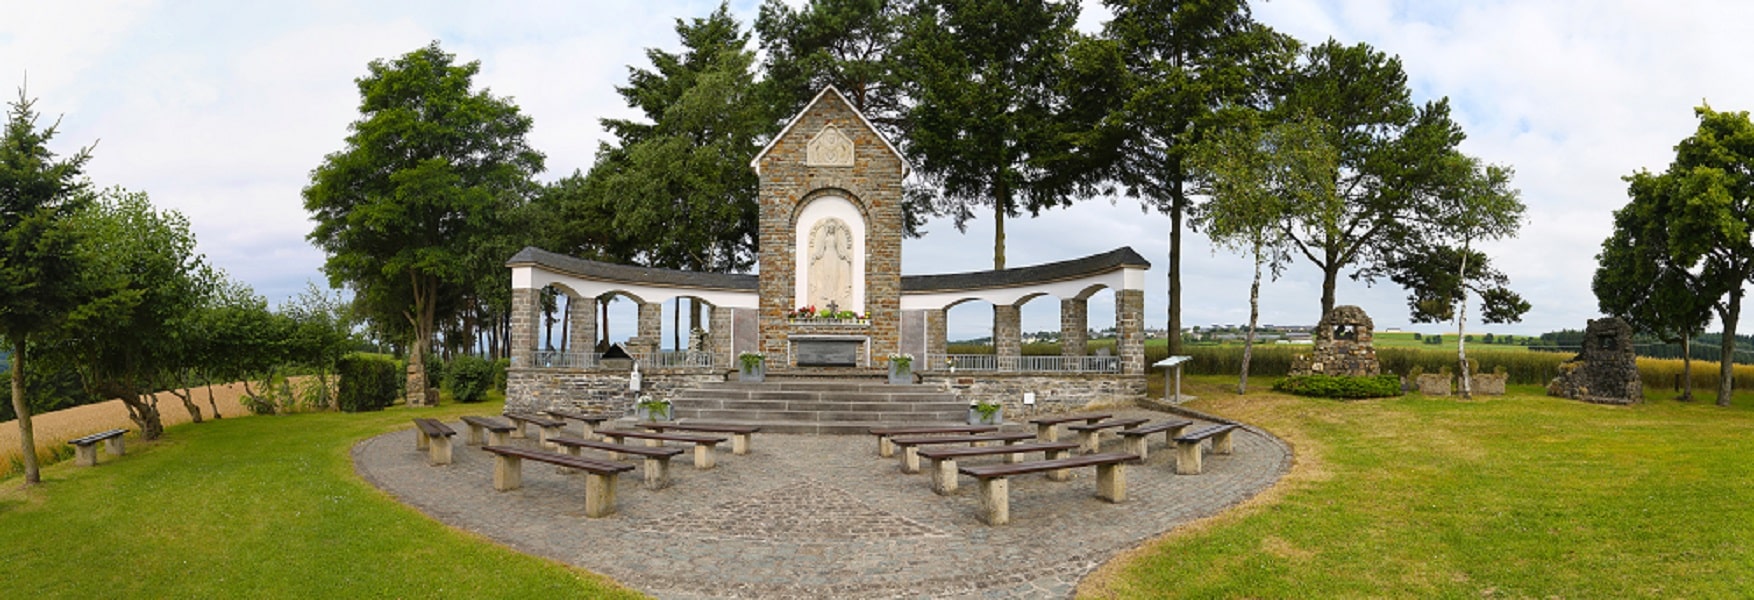 Pèlerinage Notre-Dame de Fatima Luxembourg